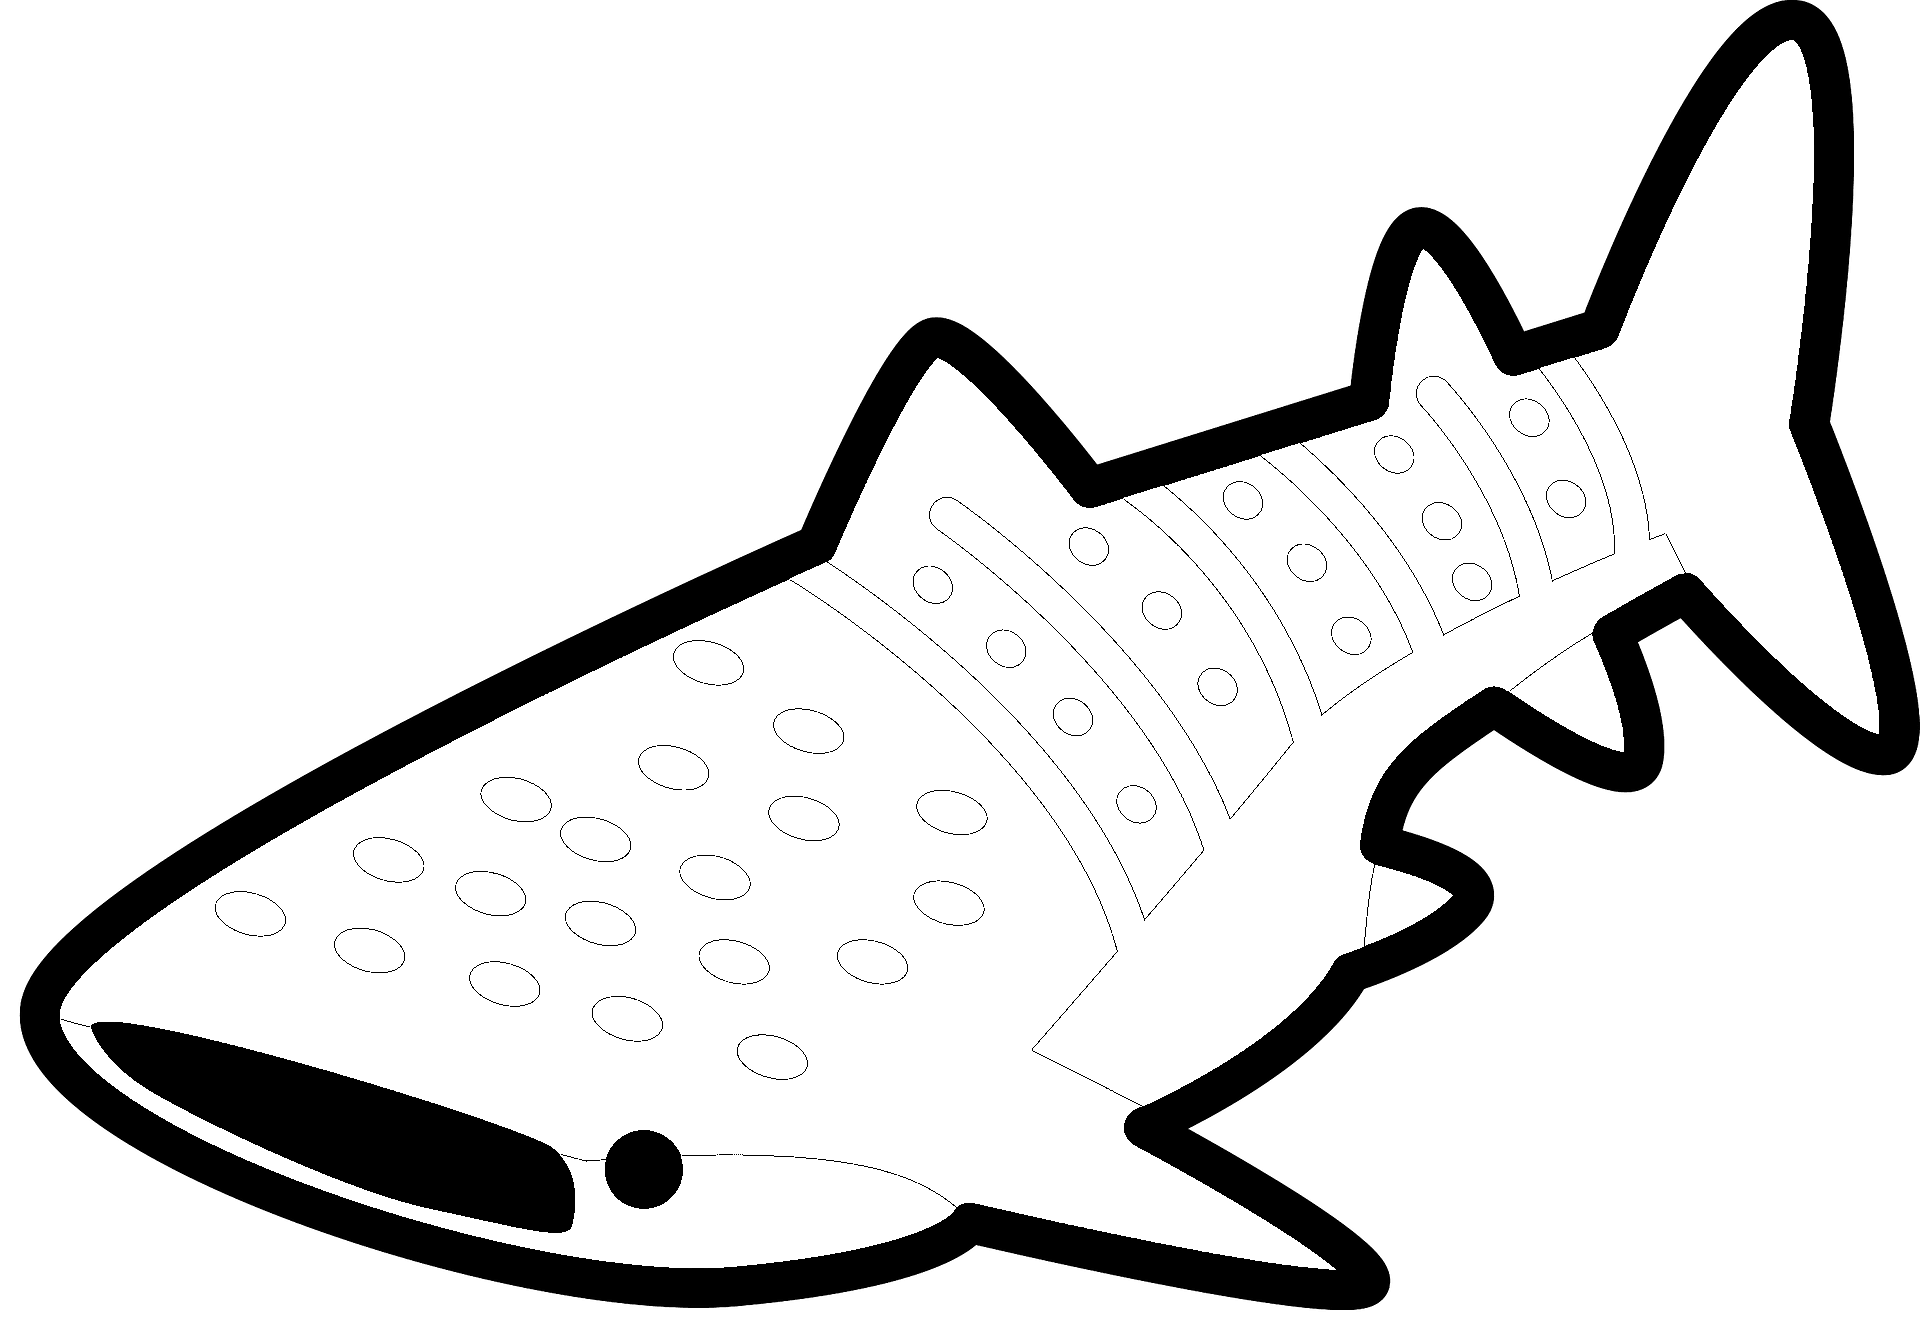 Kleurplaat van een haai